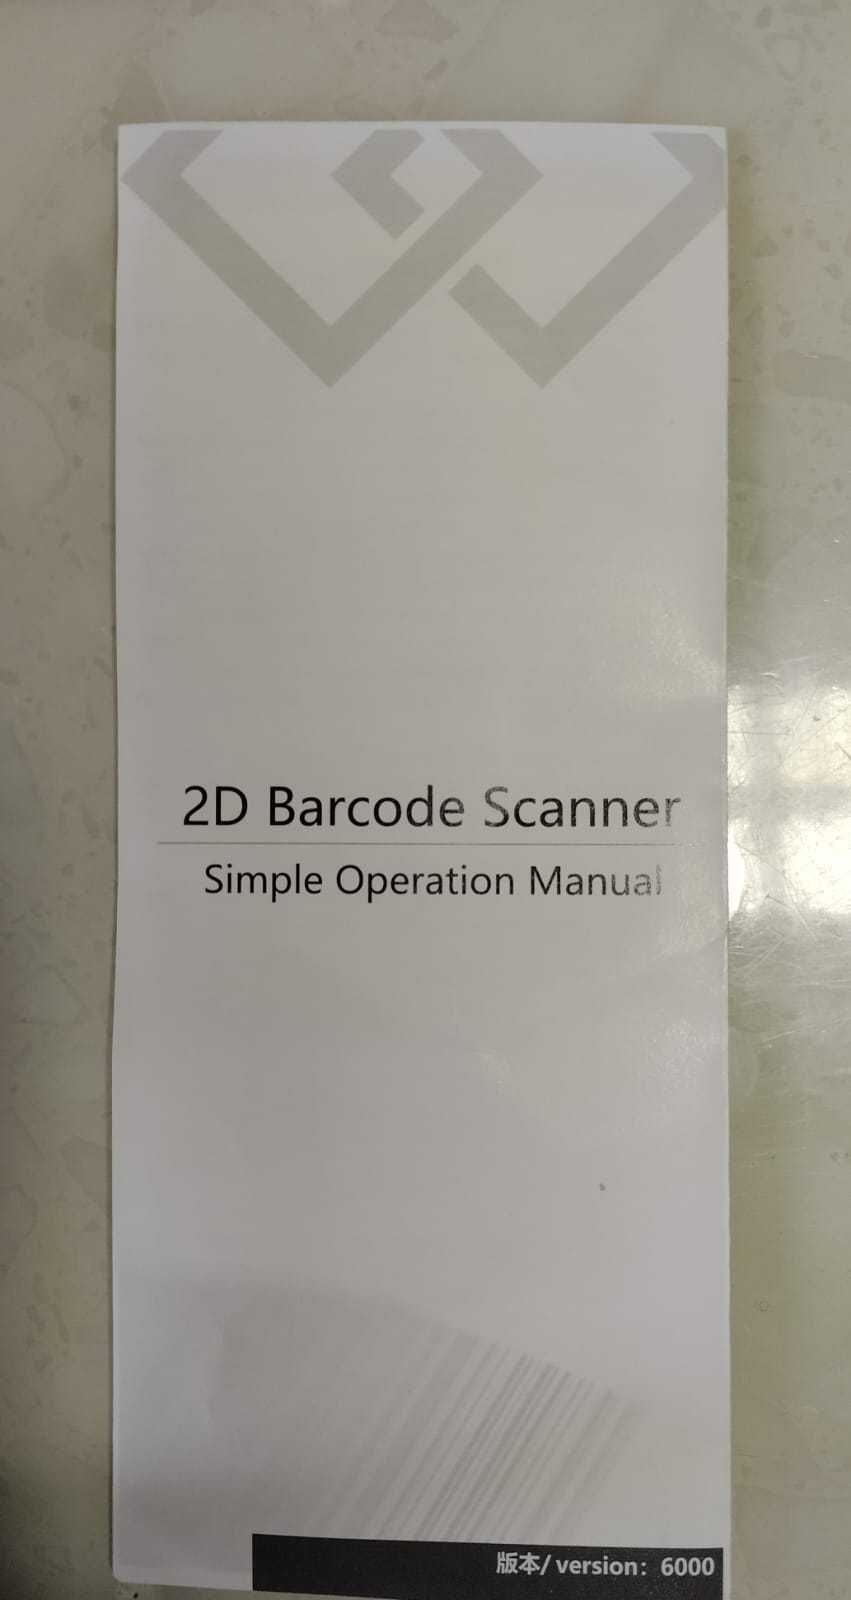 Сканер штрих кодов Symcode MJ-6708 D